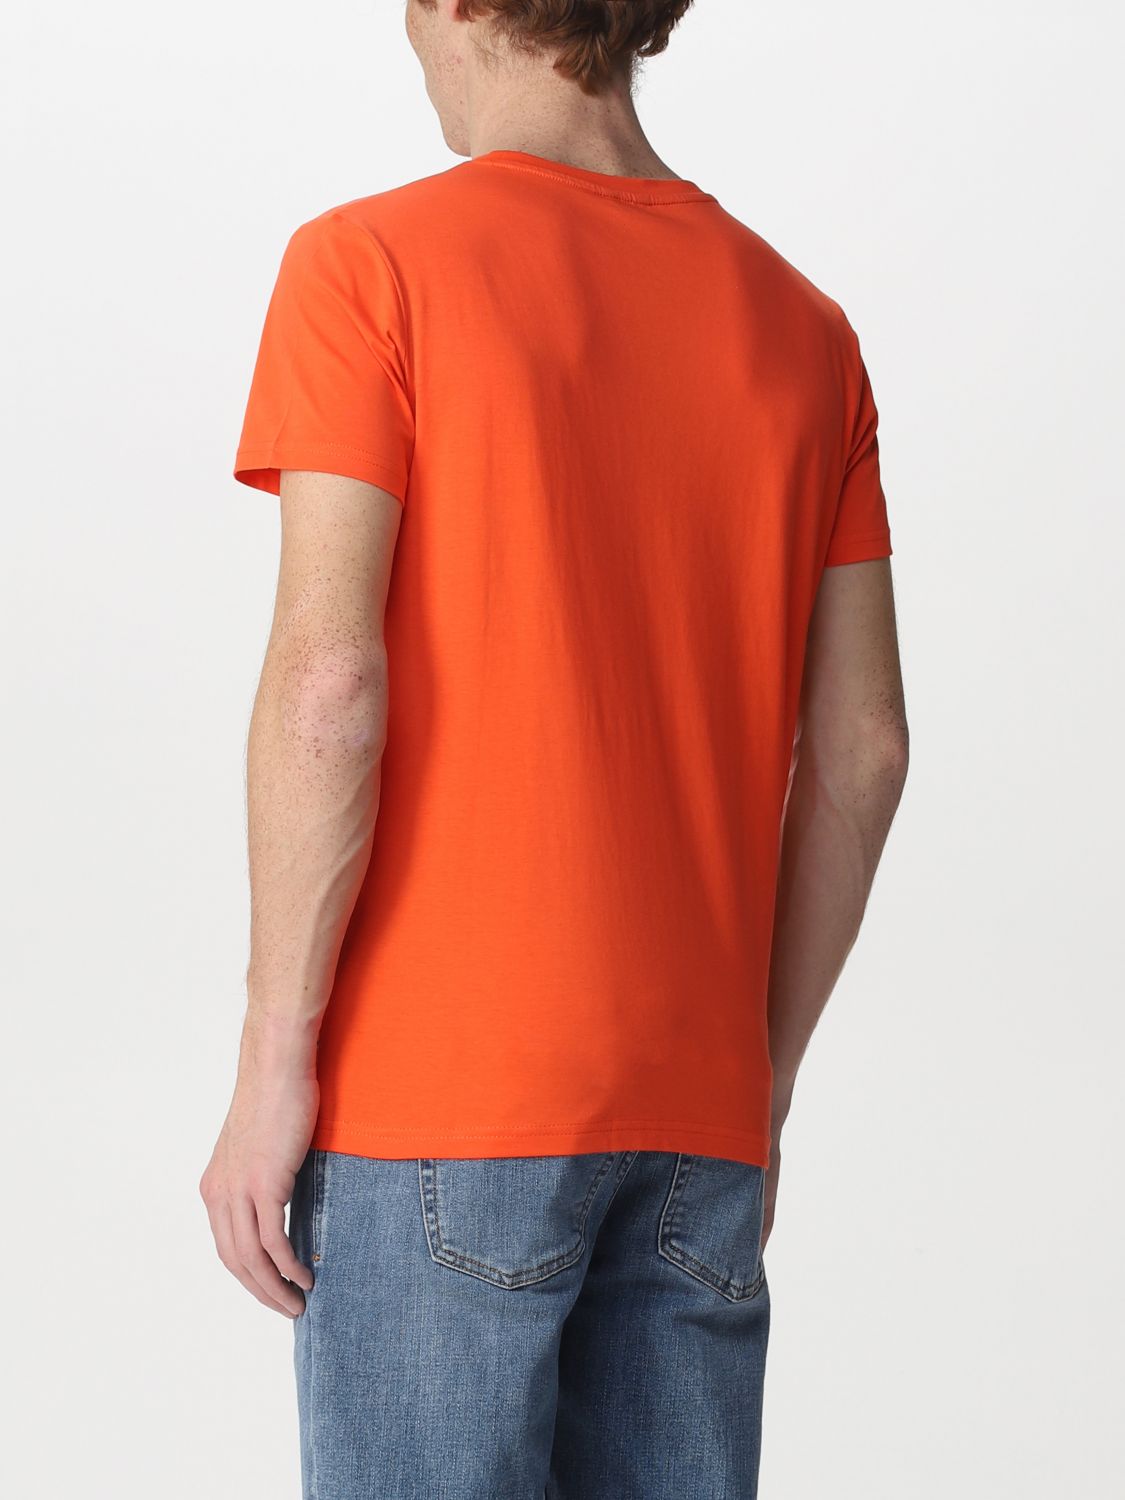 Tシャツ K-Way: Tシャツ メンズ K-way オレンジ 2